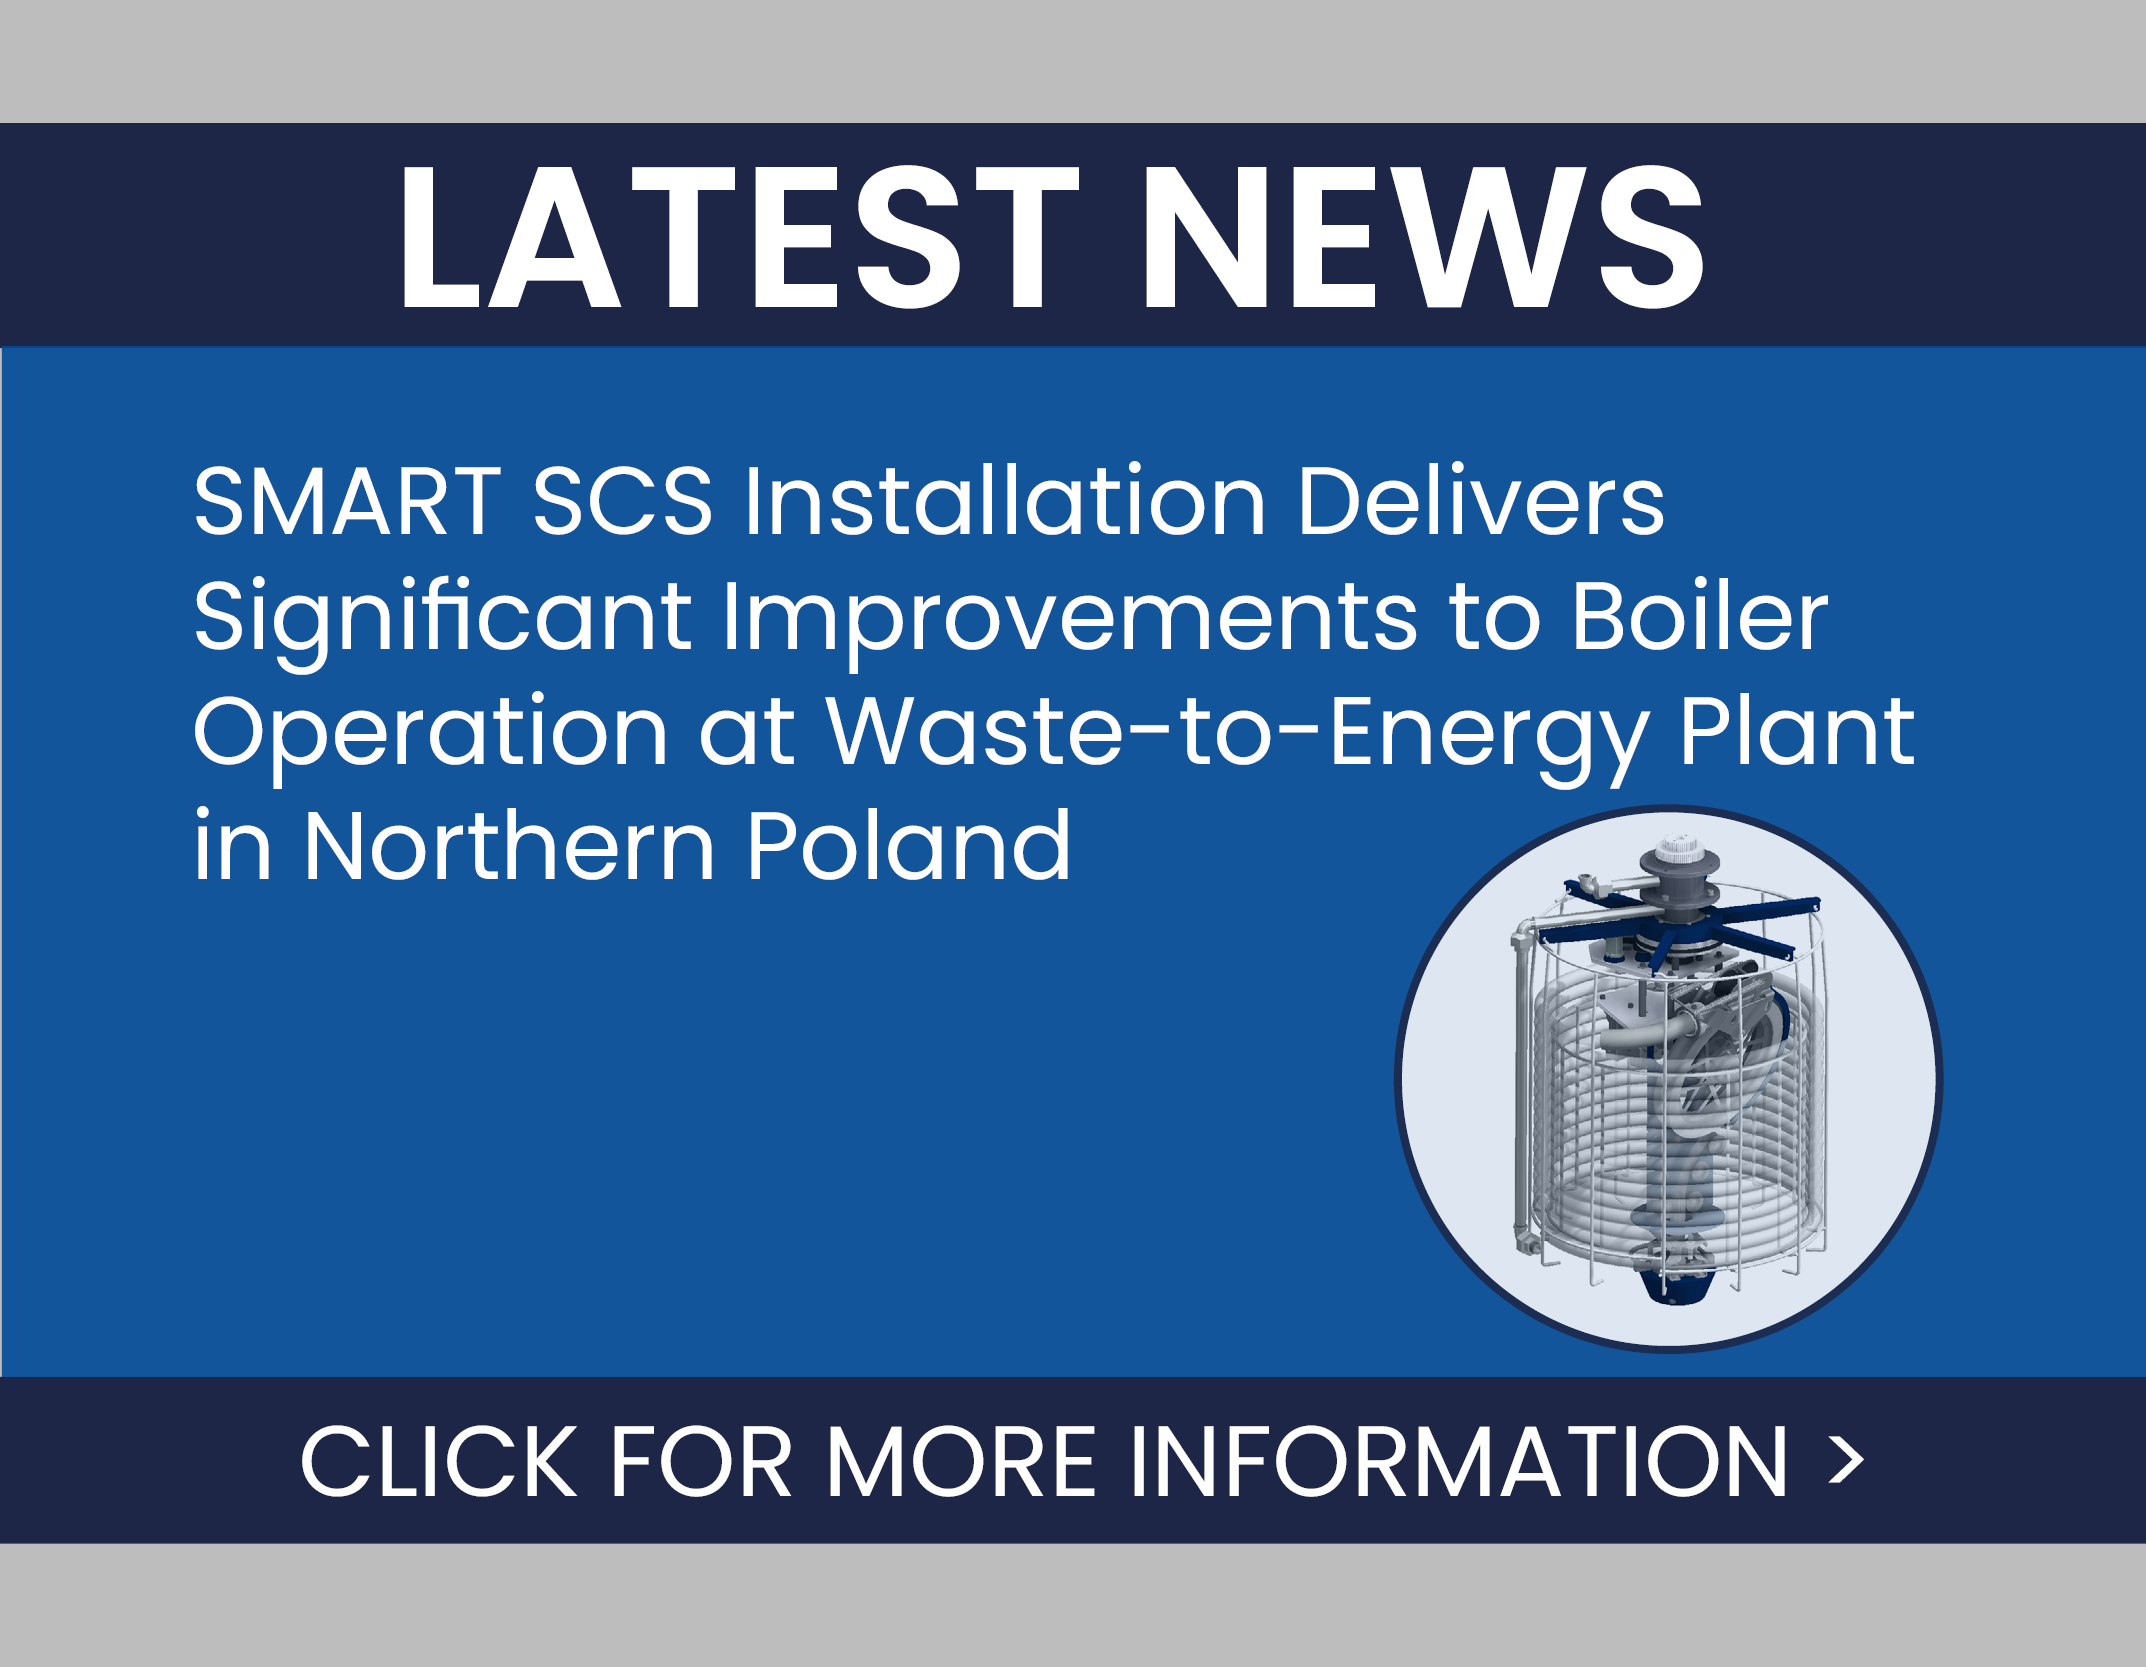 Clyde Bergemann SMART SCS Installation Waste-to-Energy Plant in Northern Poland